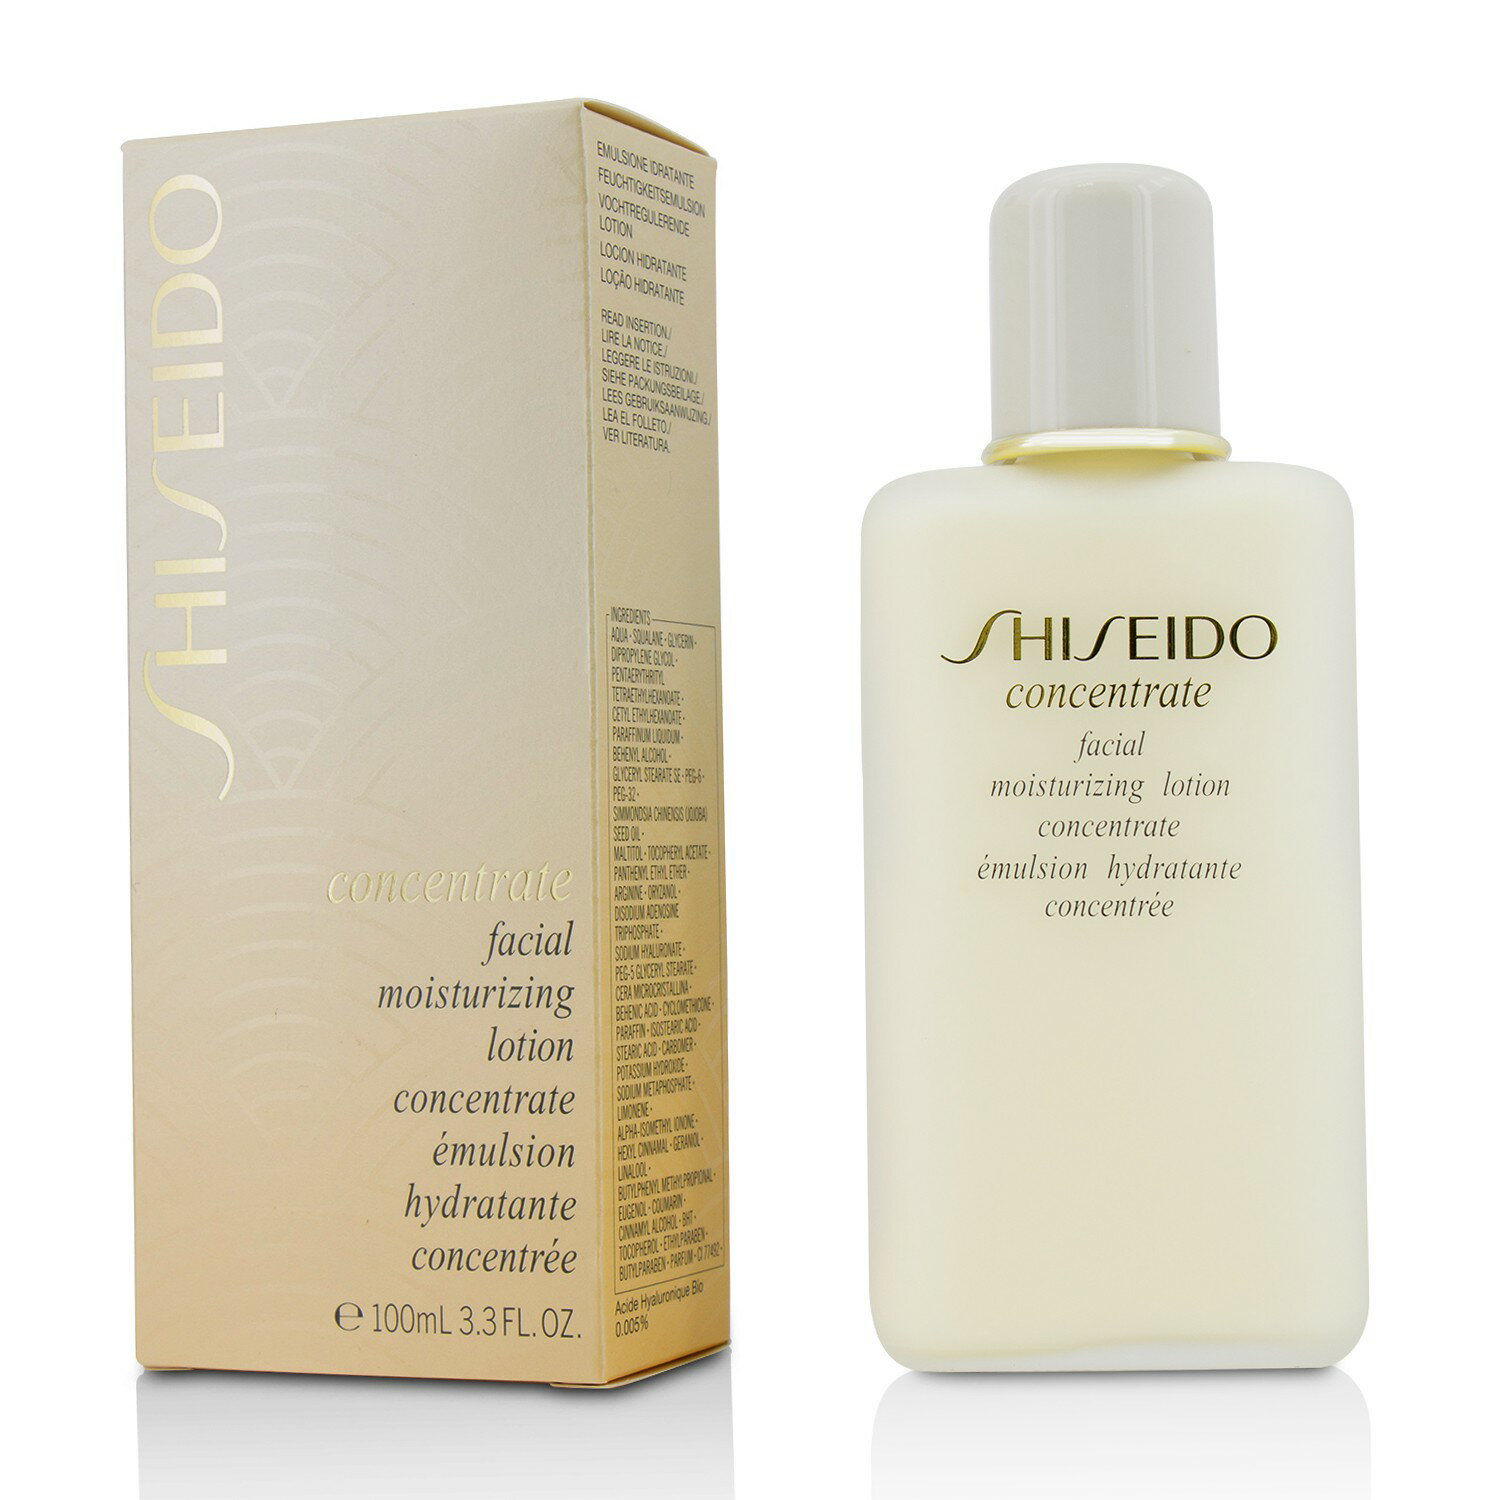 網購推薦-資生堂 Shiseido - 康肌玉膚滋潤乳液